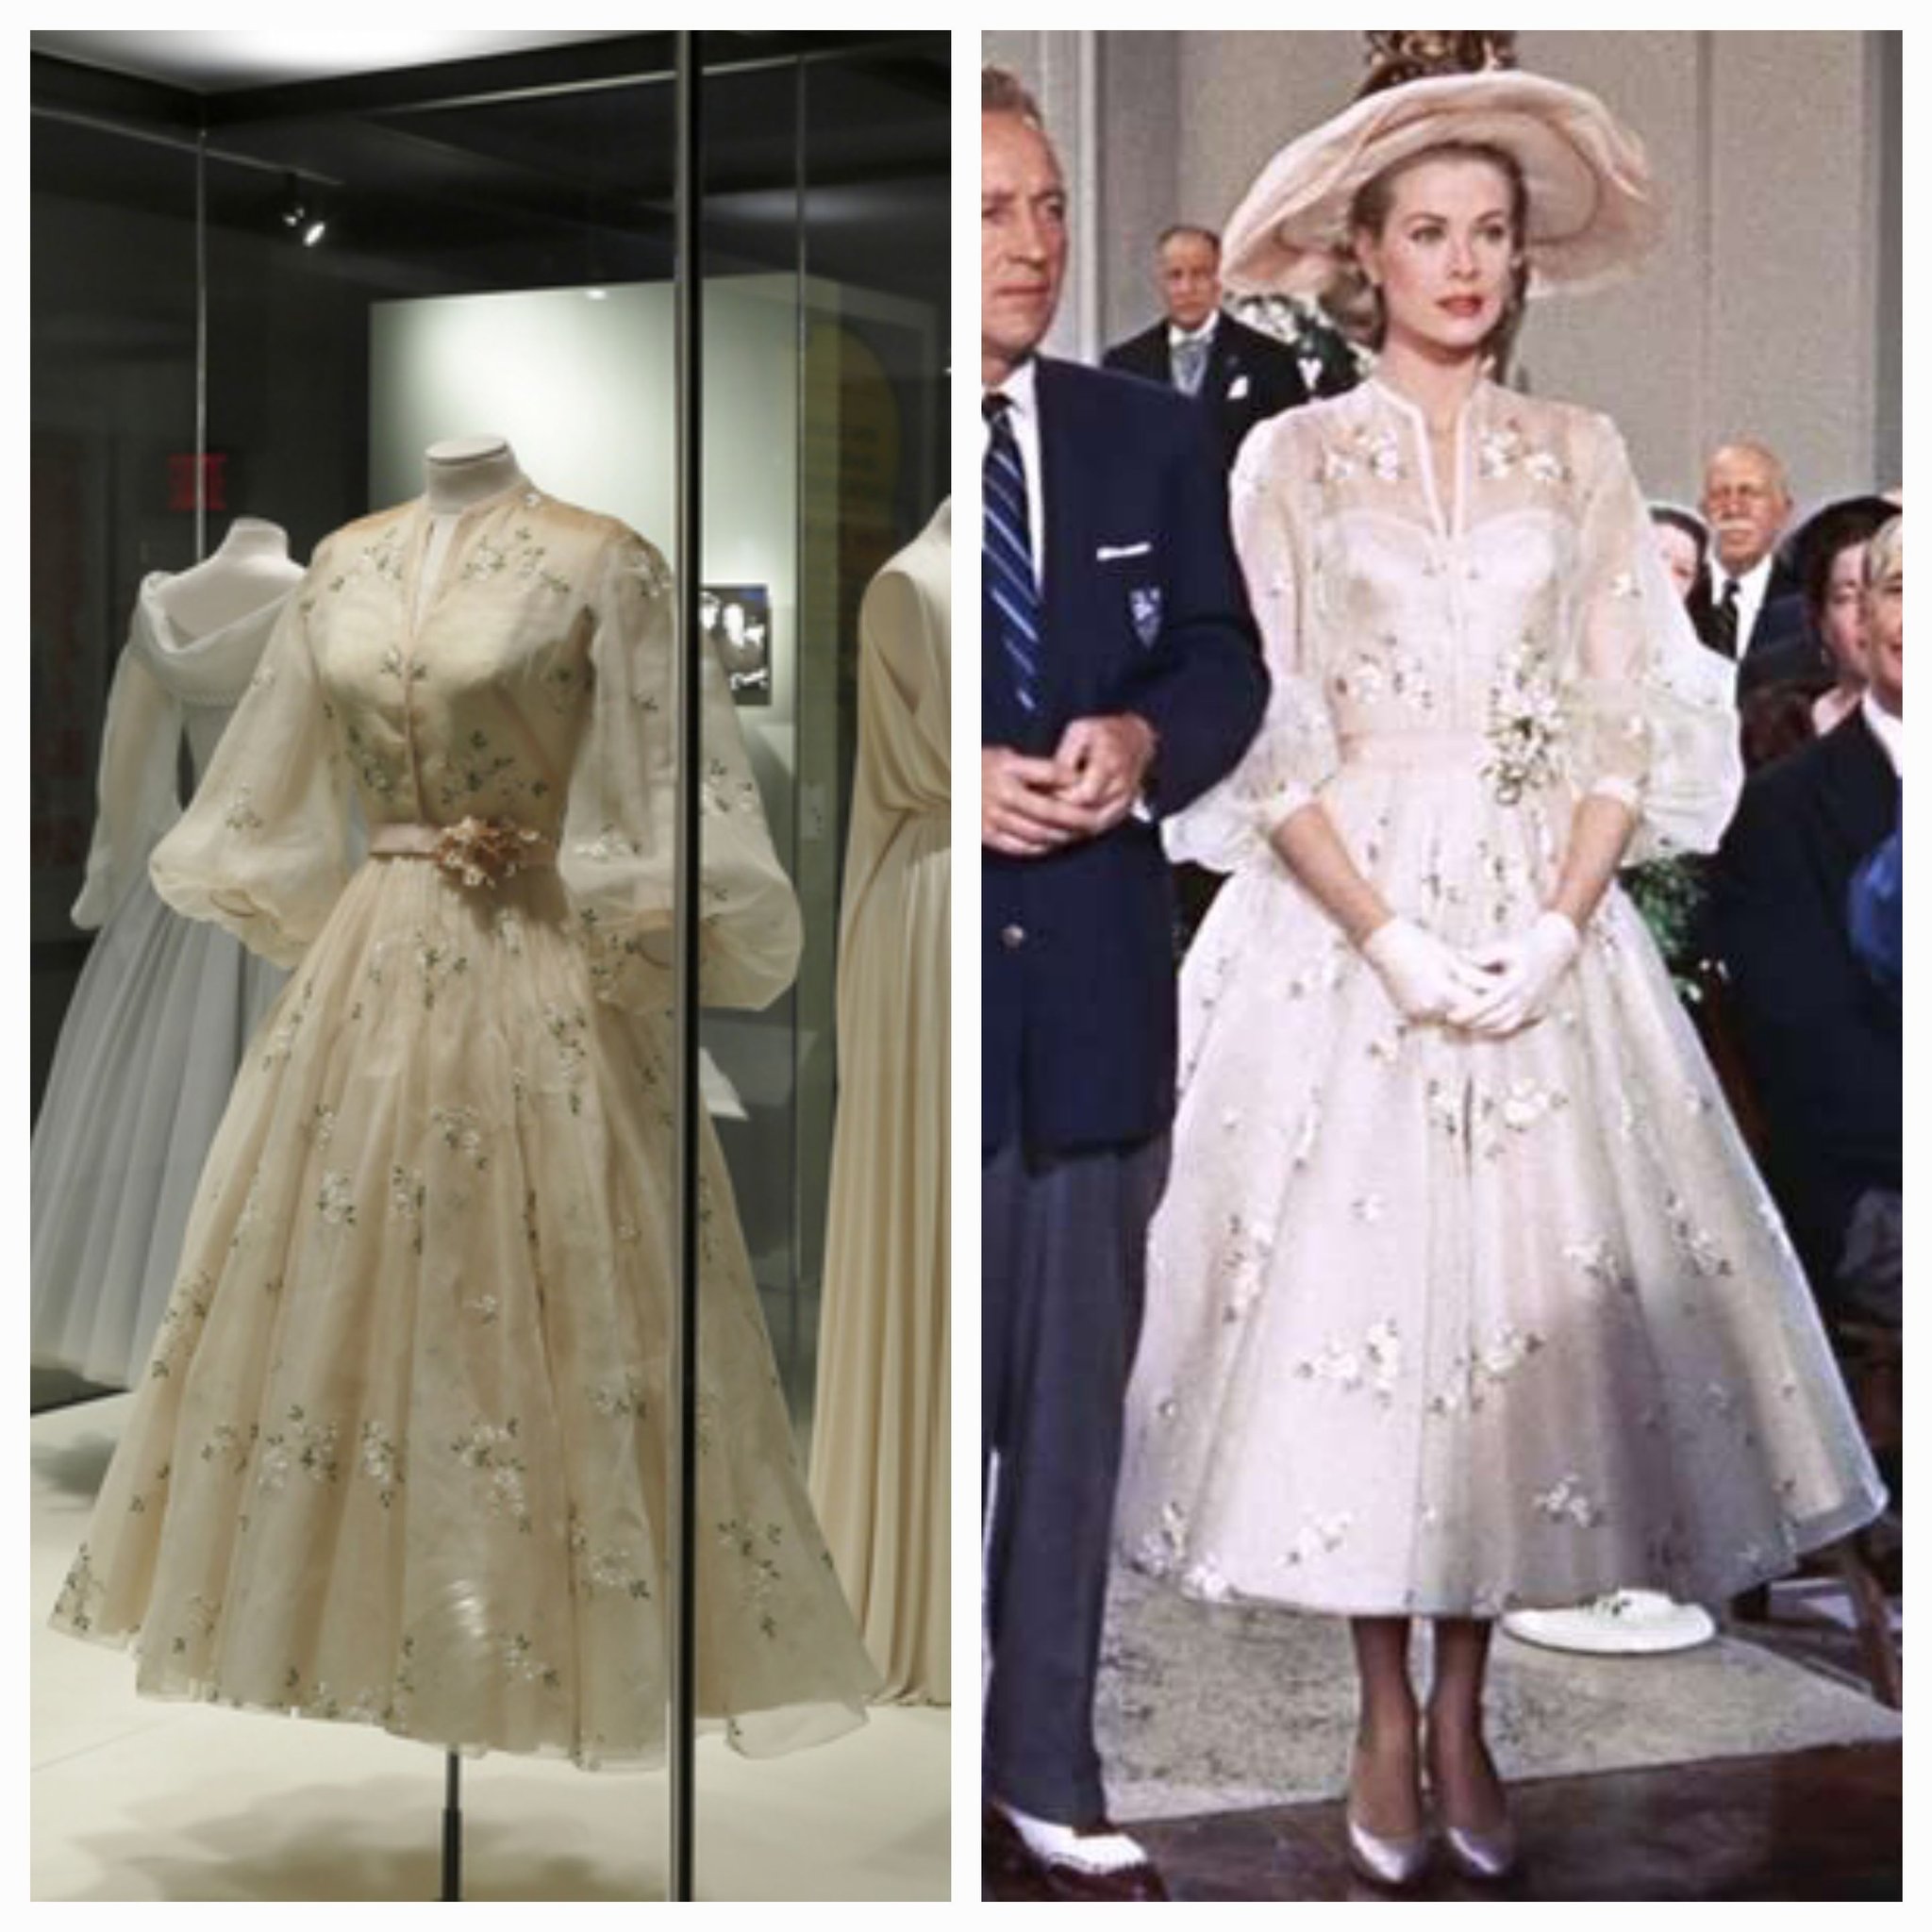 Miranda Kerr's wedding dress was inspired by Grace Kelly